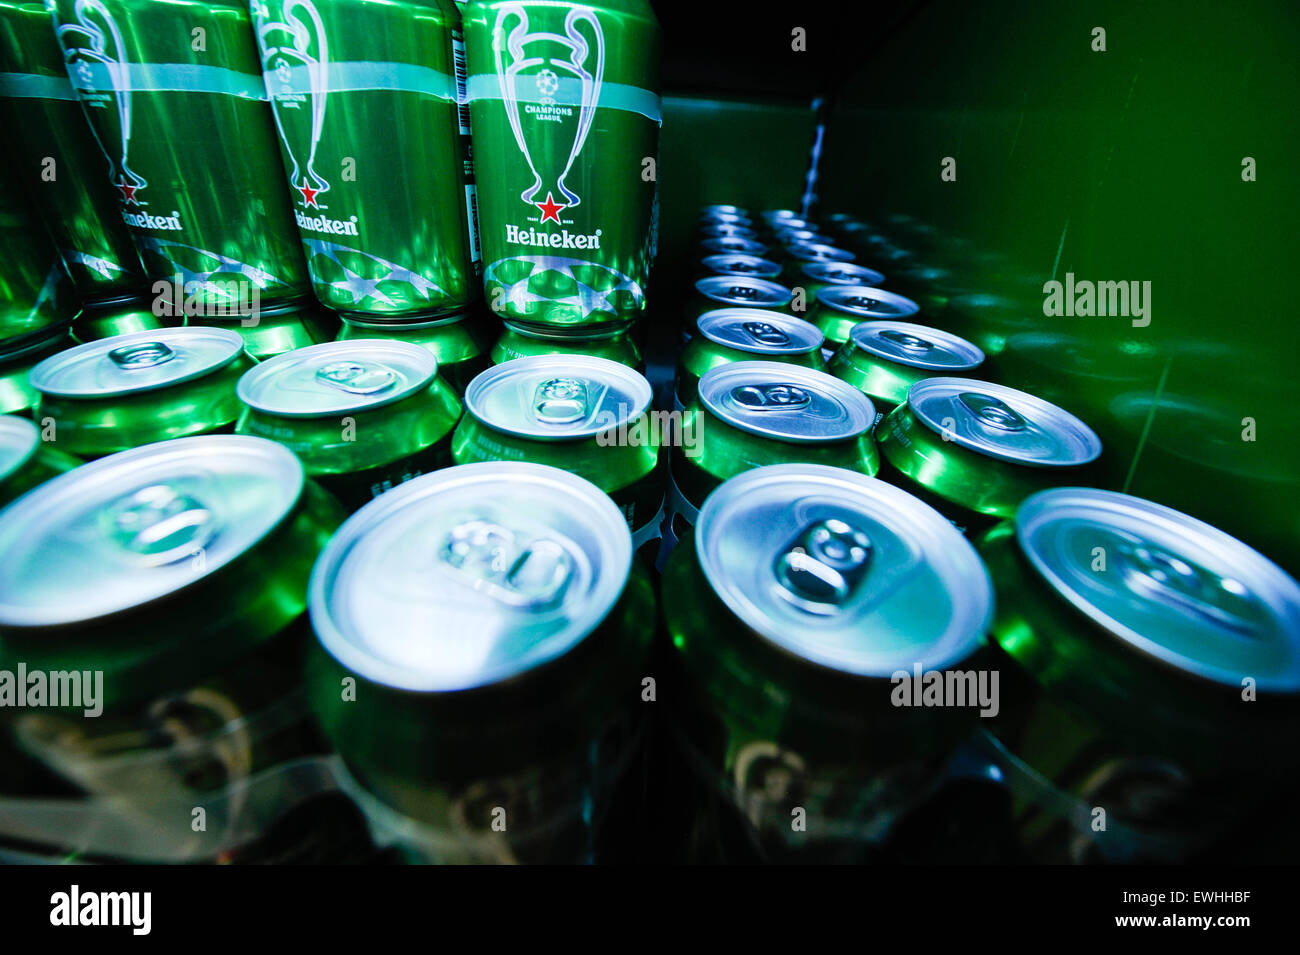 Heineken Beer Stock Photo: 84594707 - Alamy